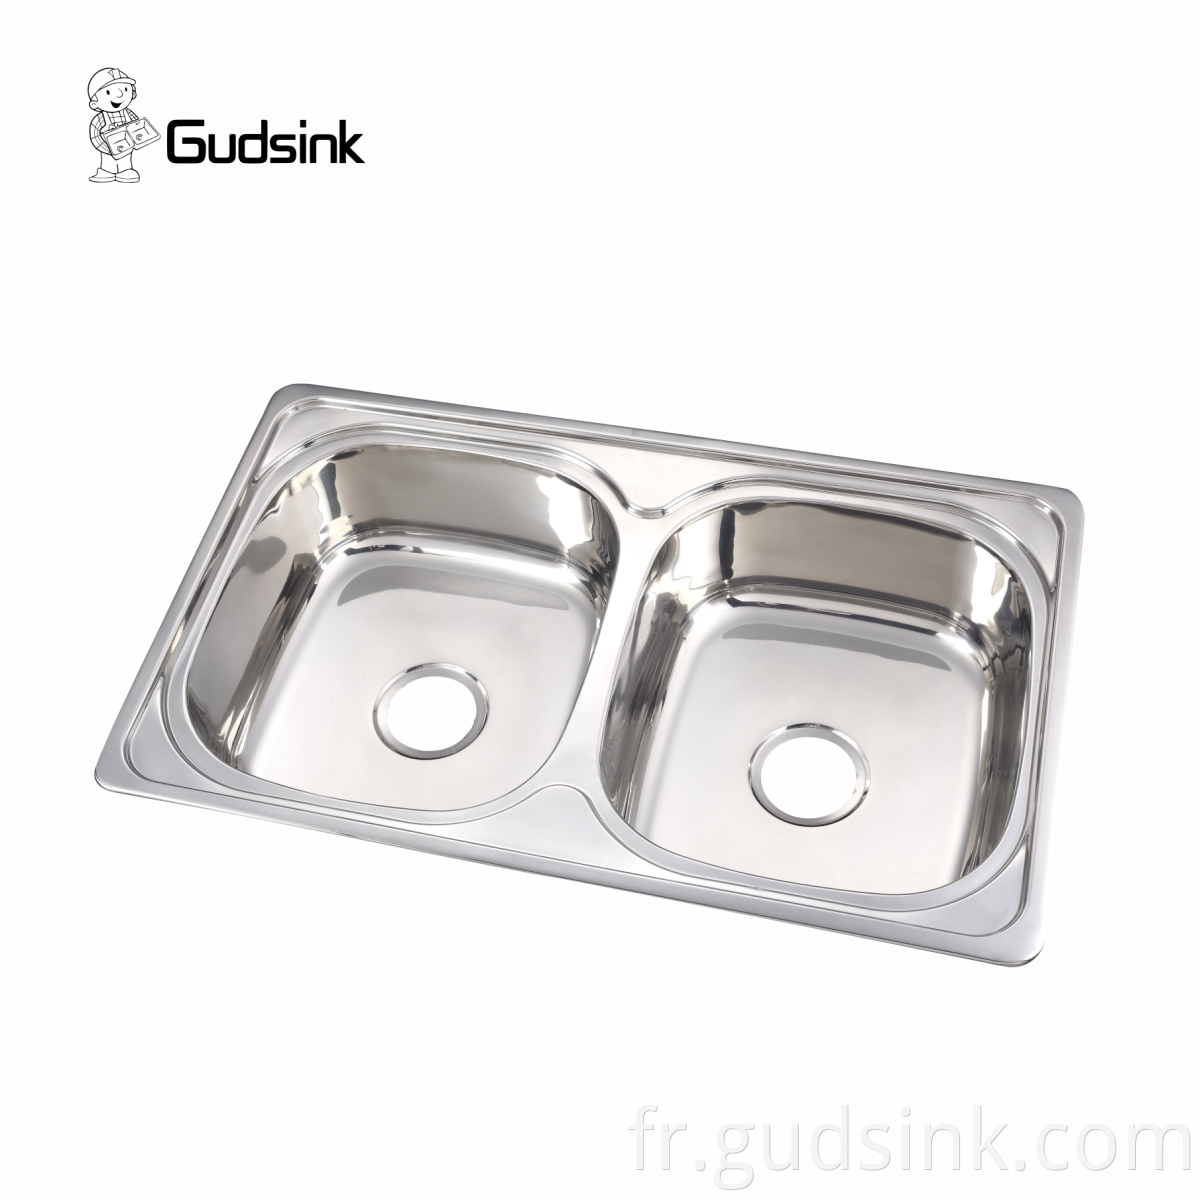 ruvati stainless steel sink